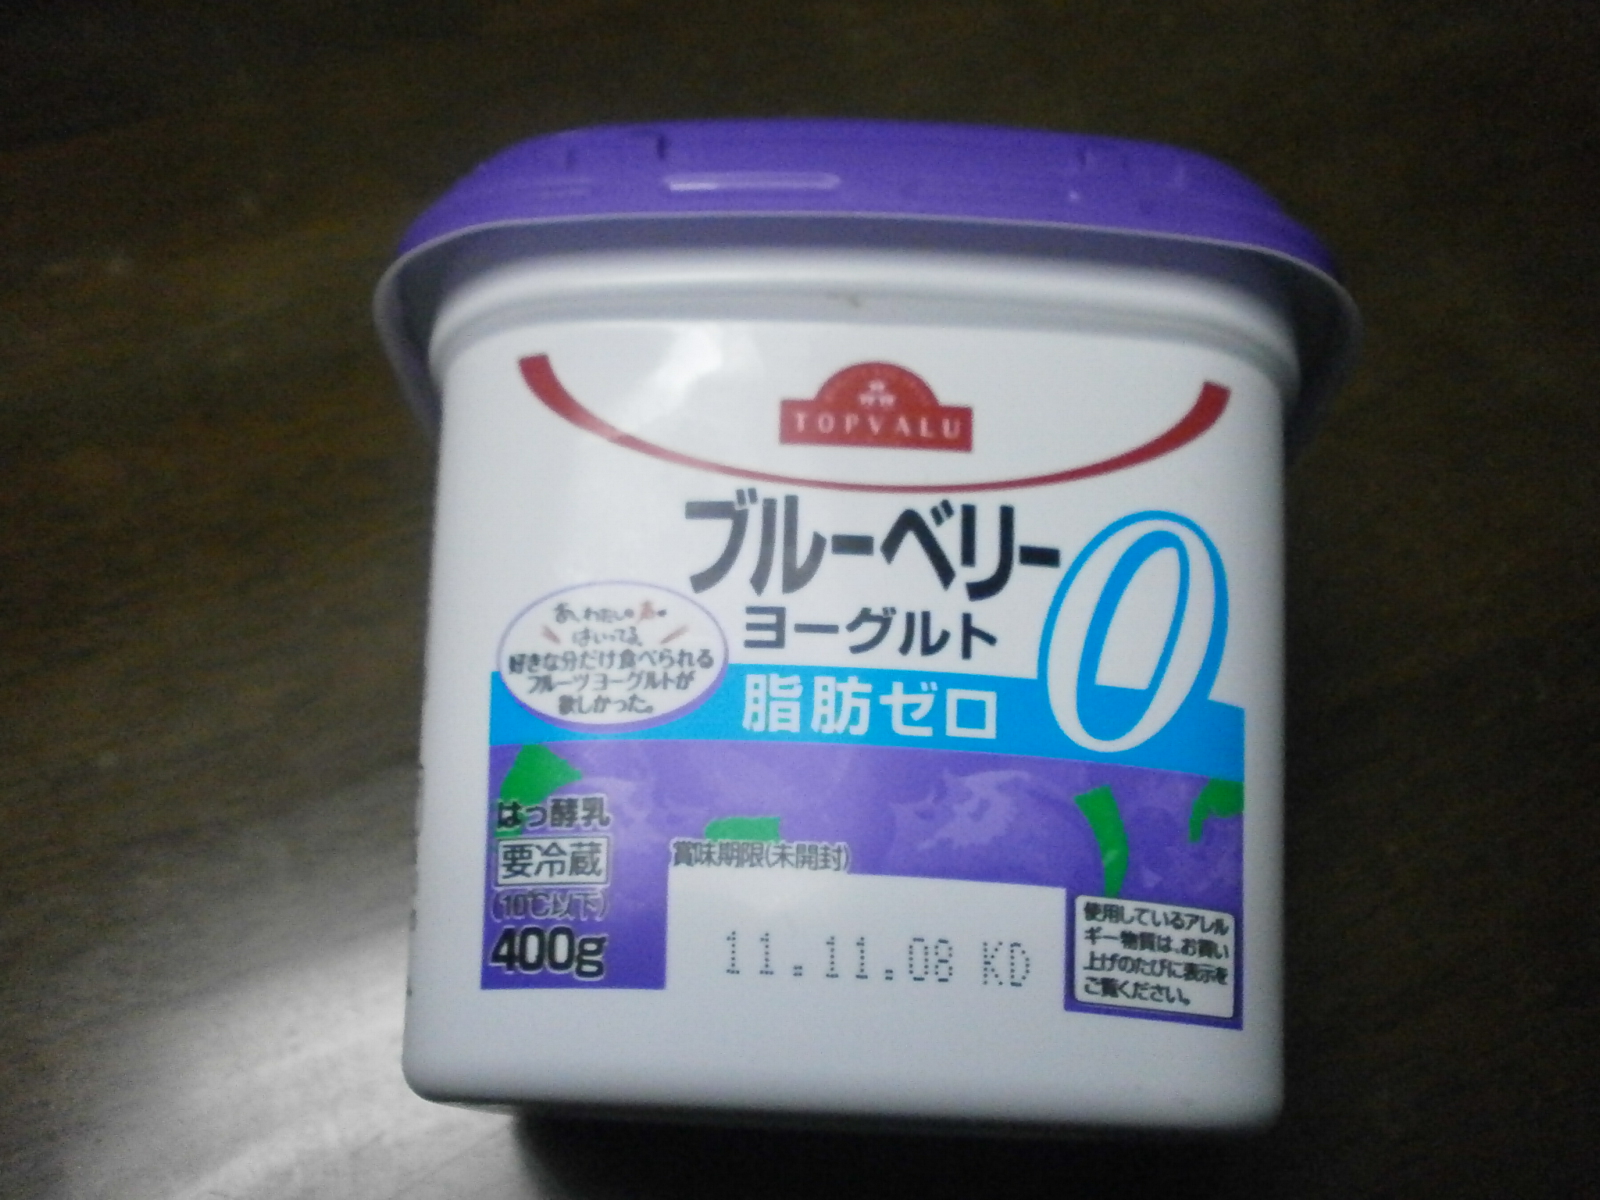 藍莓酸奶（TOPVALU）